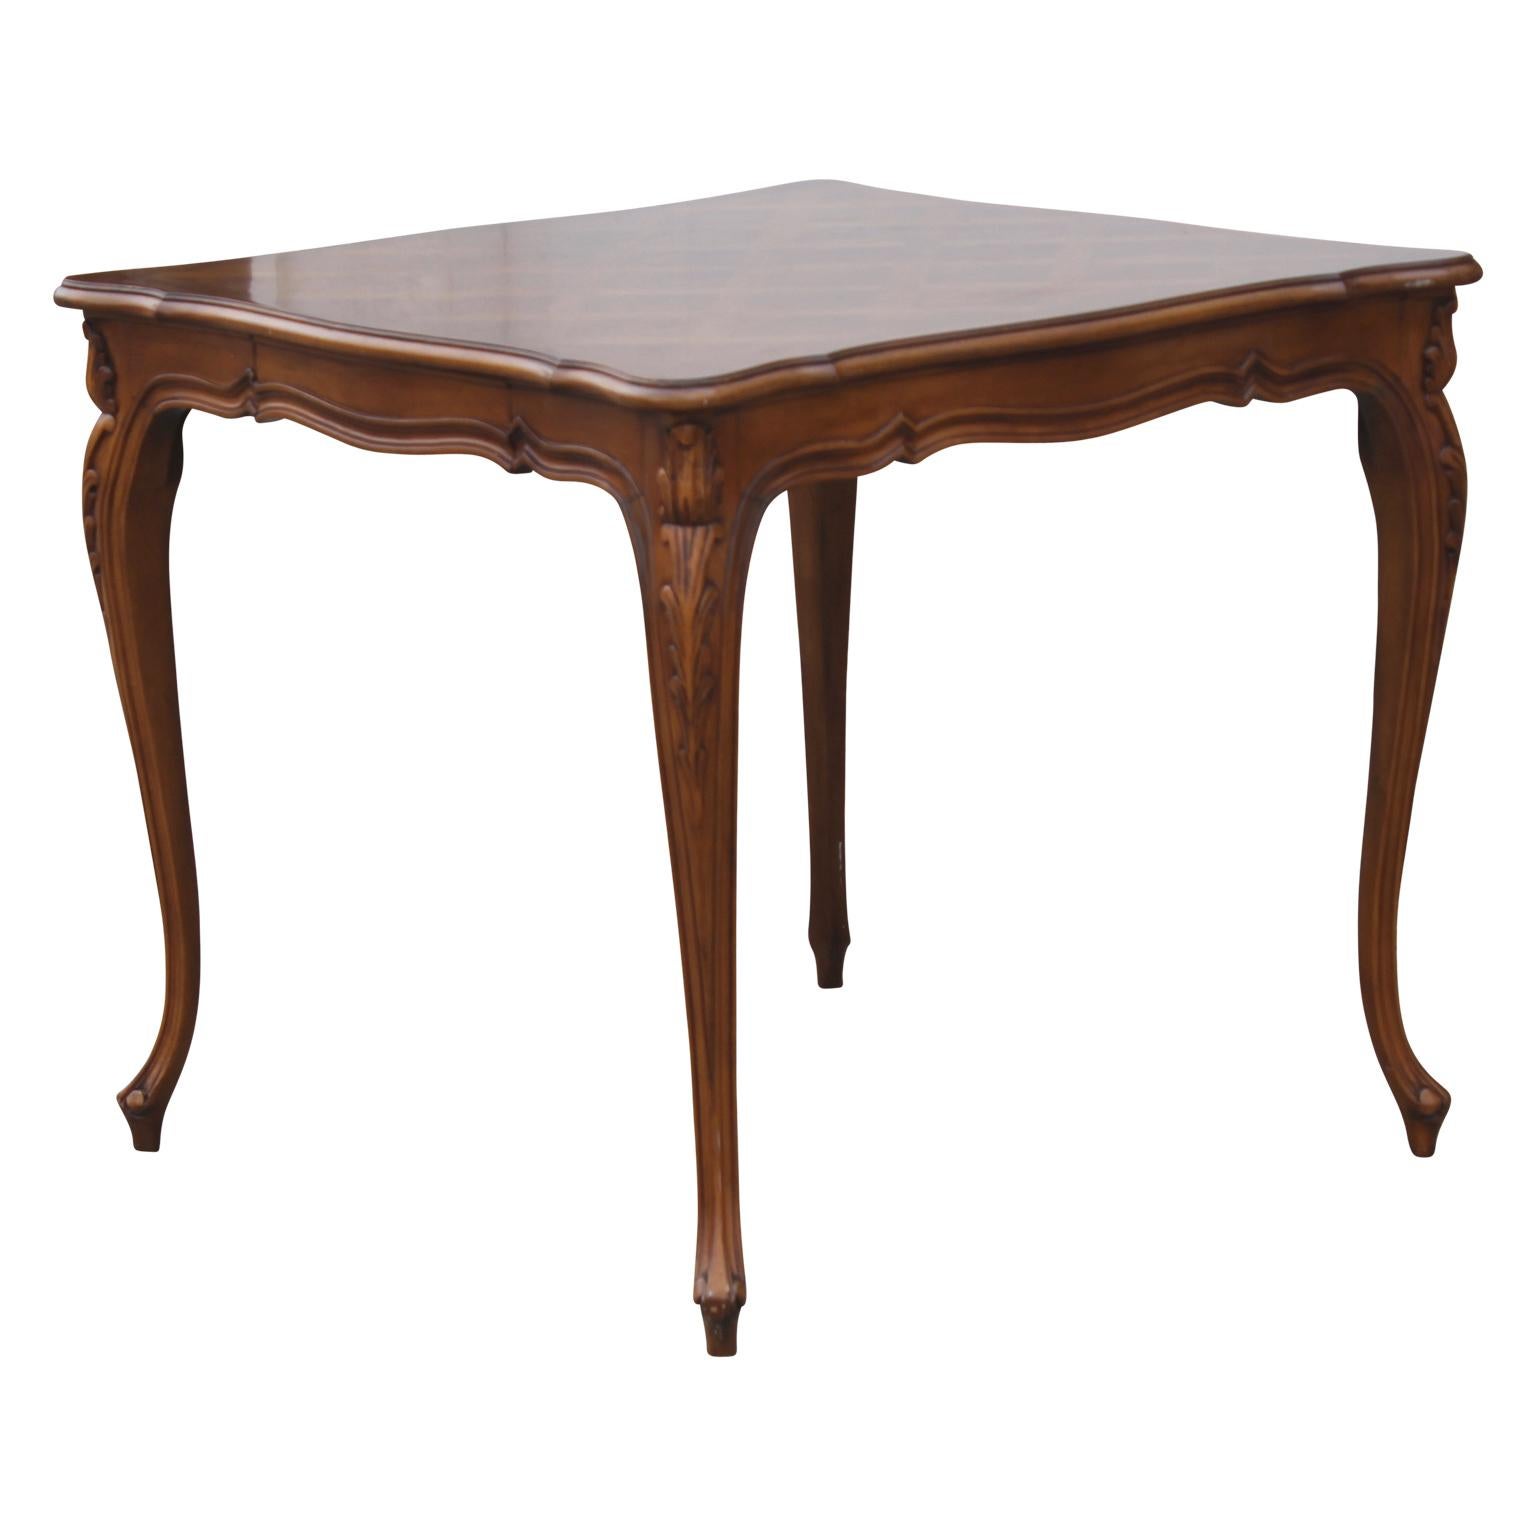 Schöner quadratischer Spieltisch aus Nussbaum im französischen Louis XV-Stil von Karges Furniture. Dieses Stück zeichnet sich durch wunderbar detaillierte Beine im französischen Stil und eine schöne Parkett-Tischplatte aus.